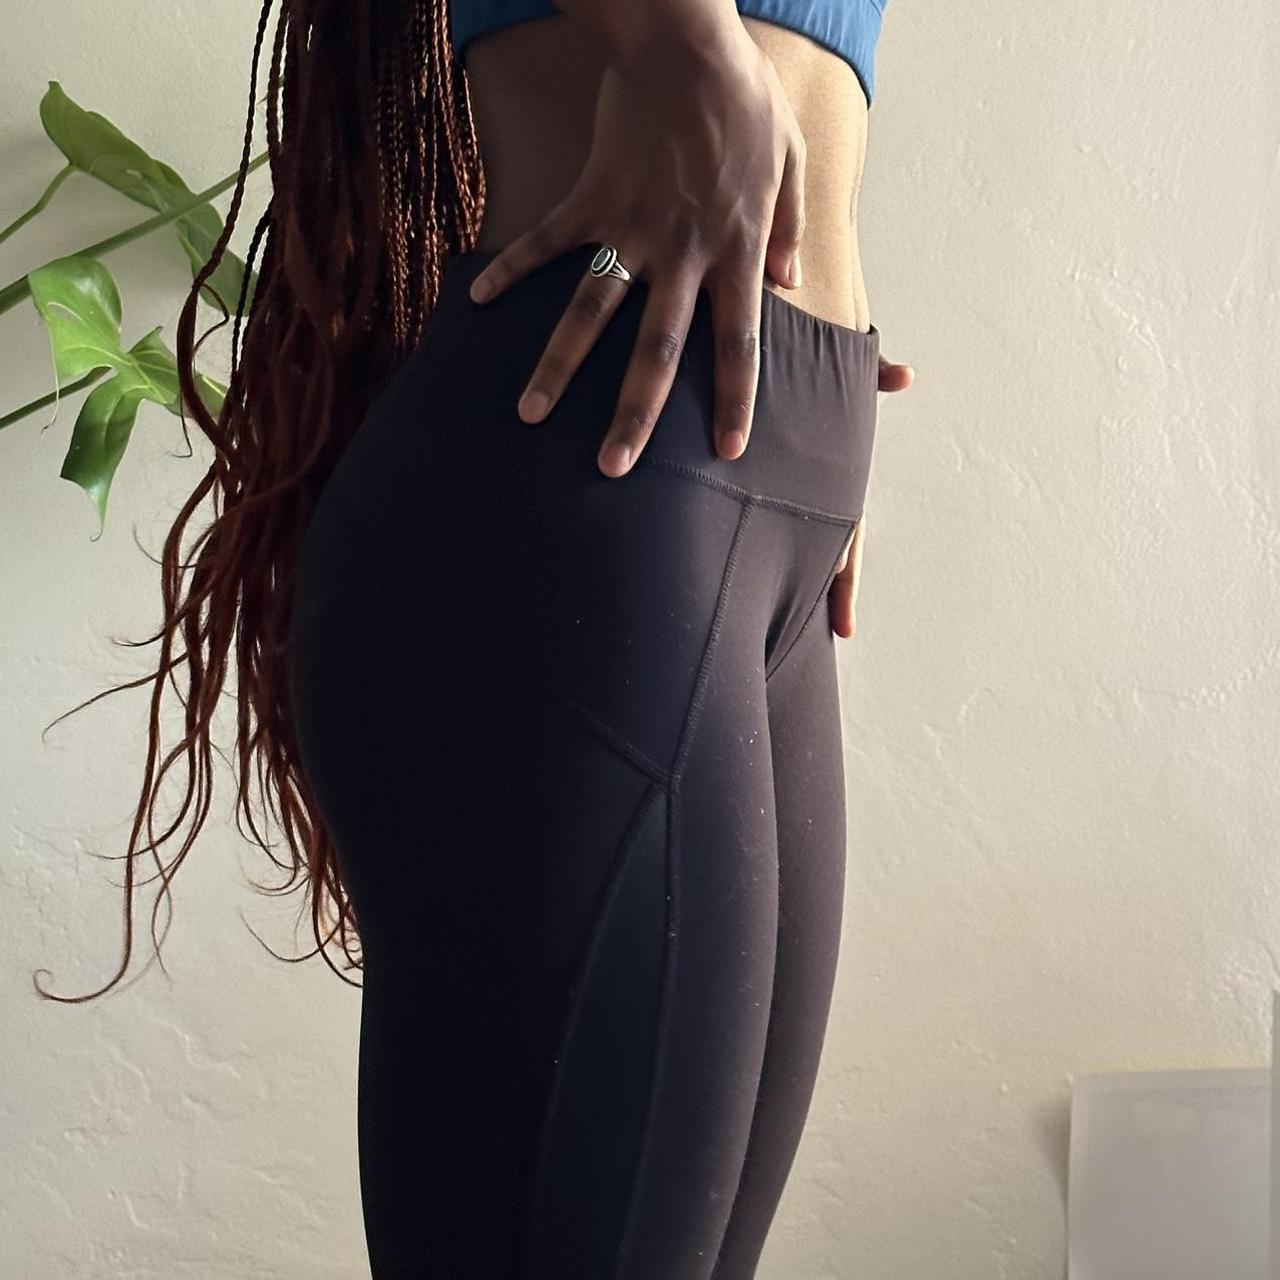 Buy Sweaty Betty Black Full Length Super Soft Yoga Leggings from